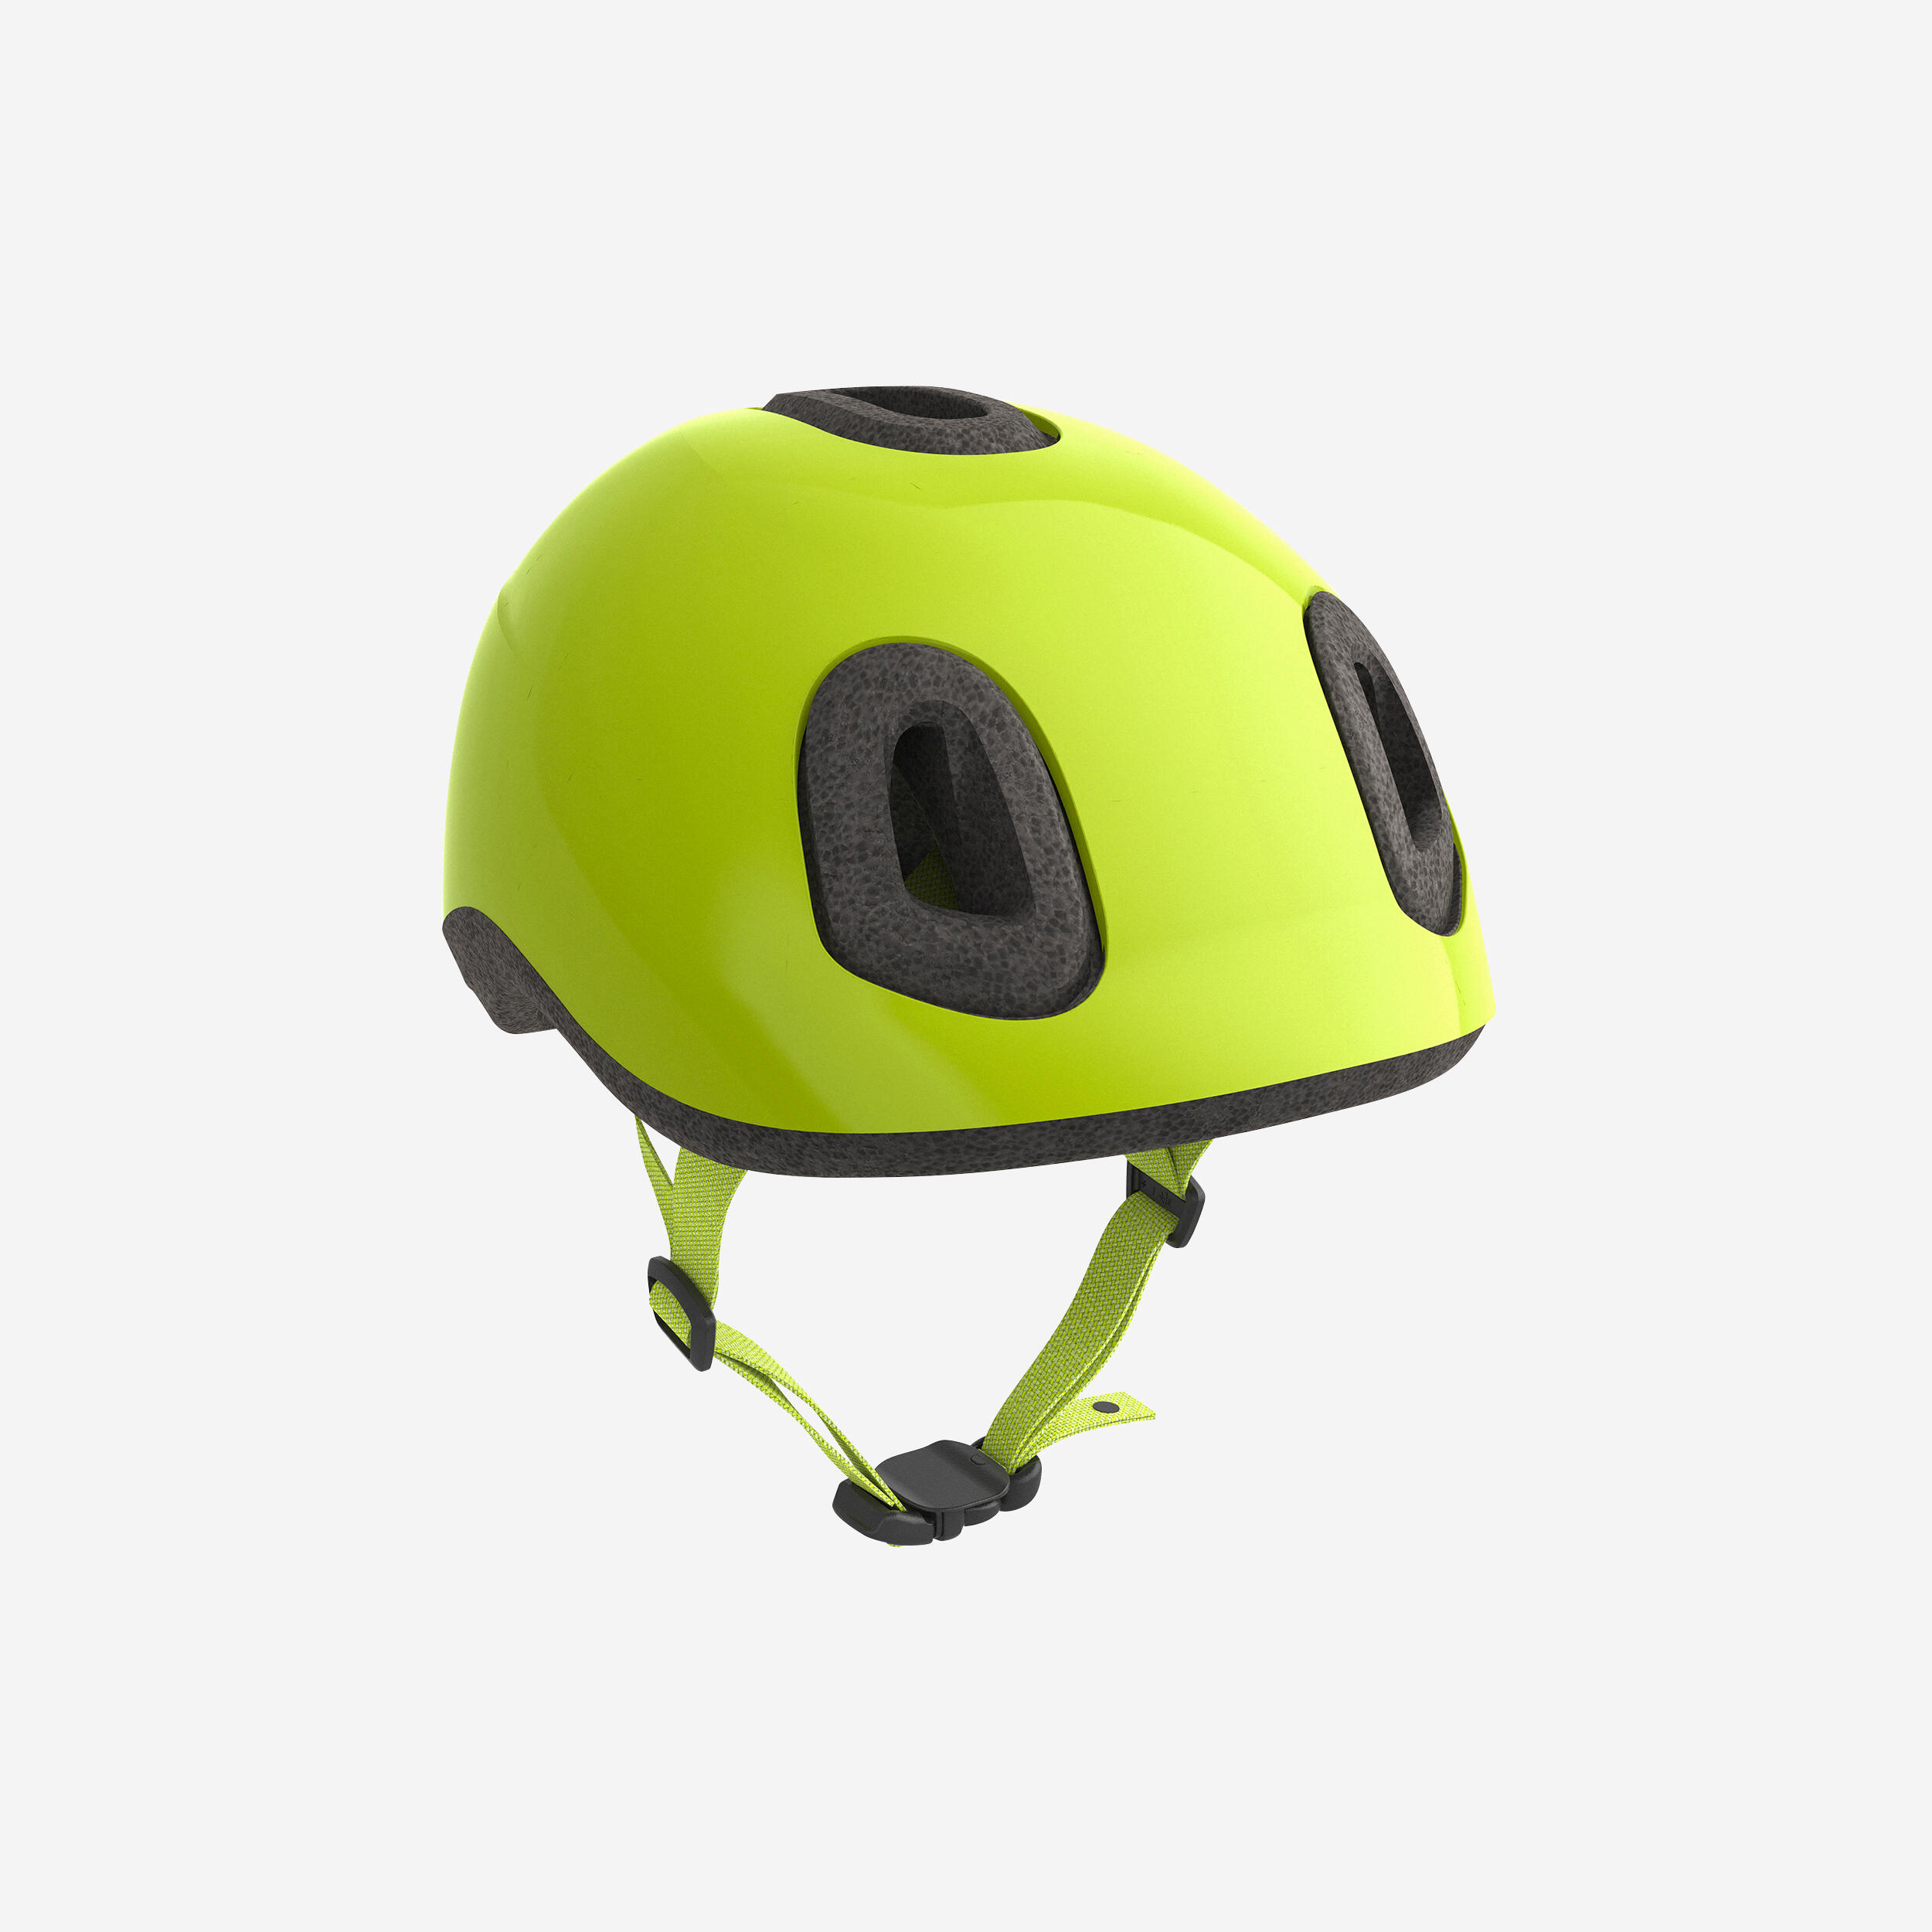 Kids Helmets - Cycle Helmet for Kids 